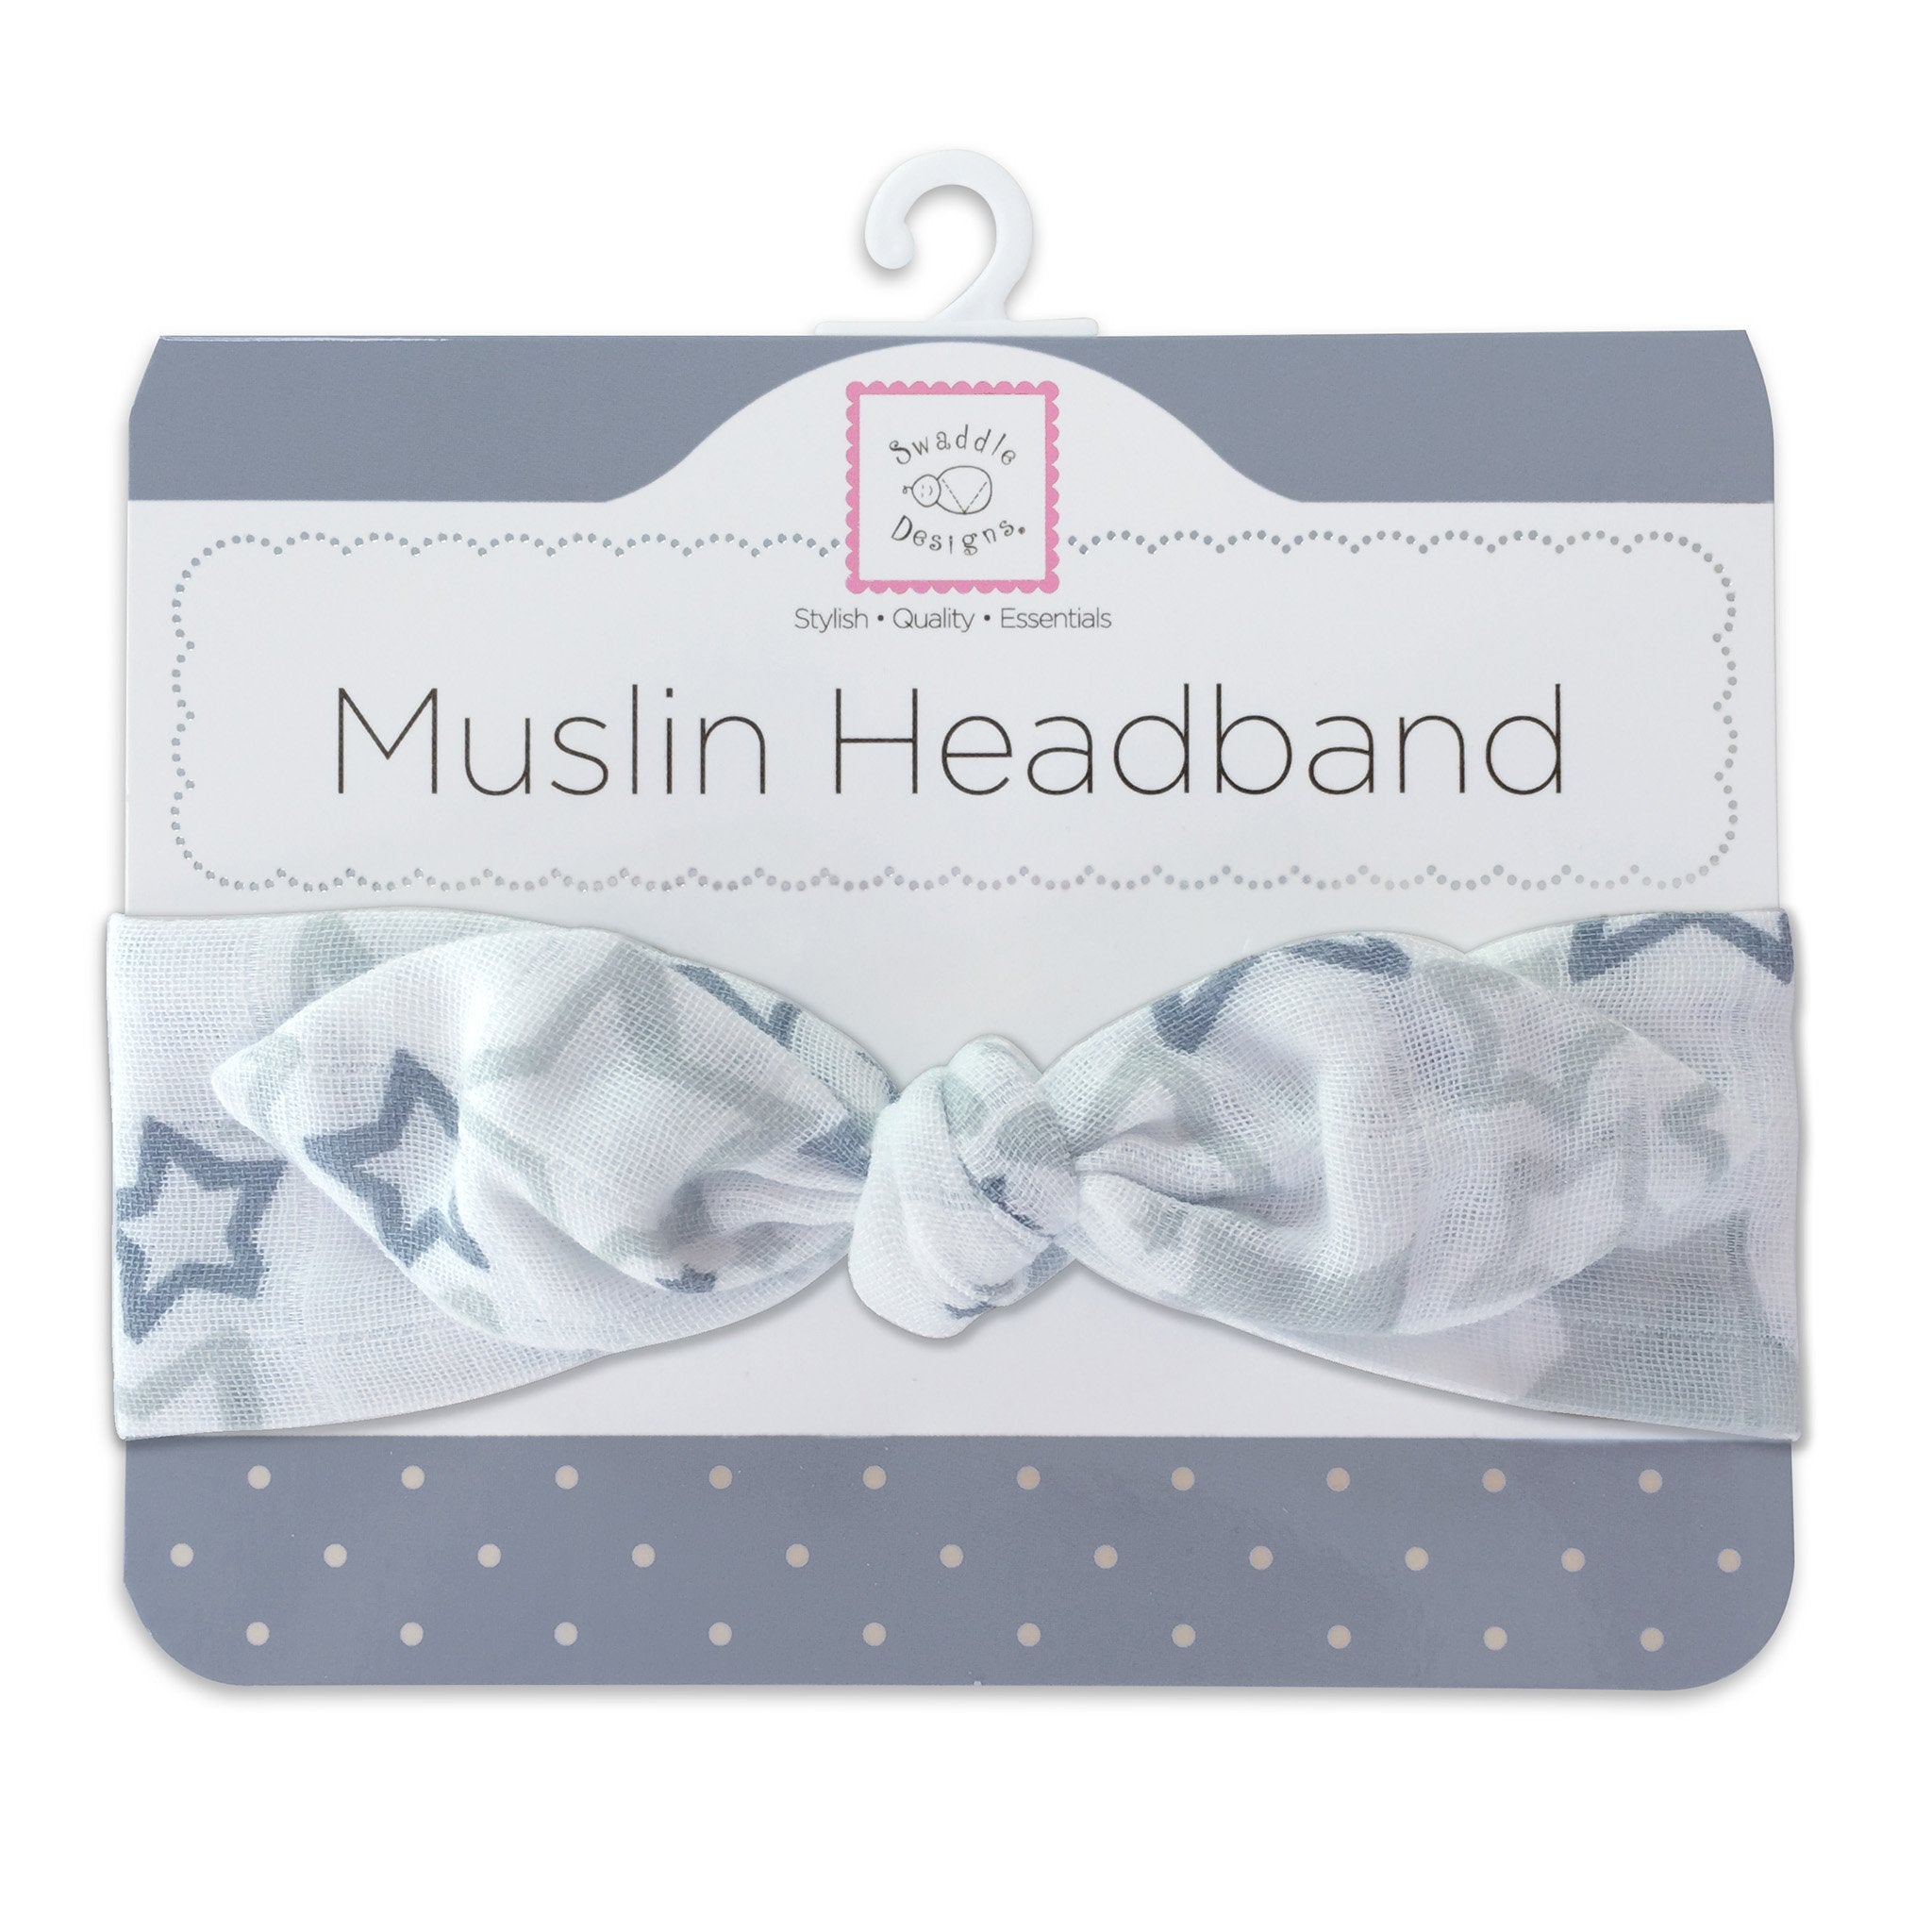 Muslin Headband - Starshine Shimmer, Sterling